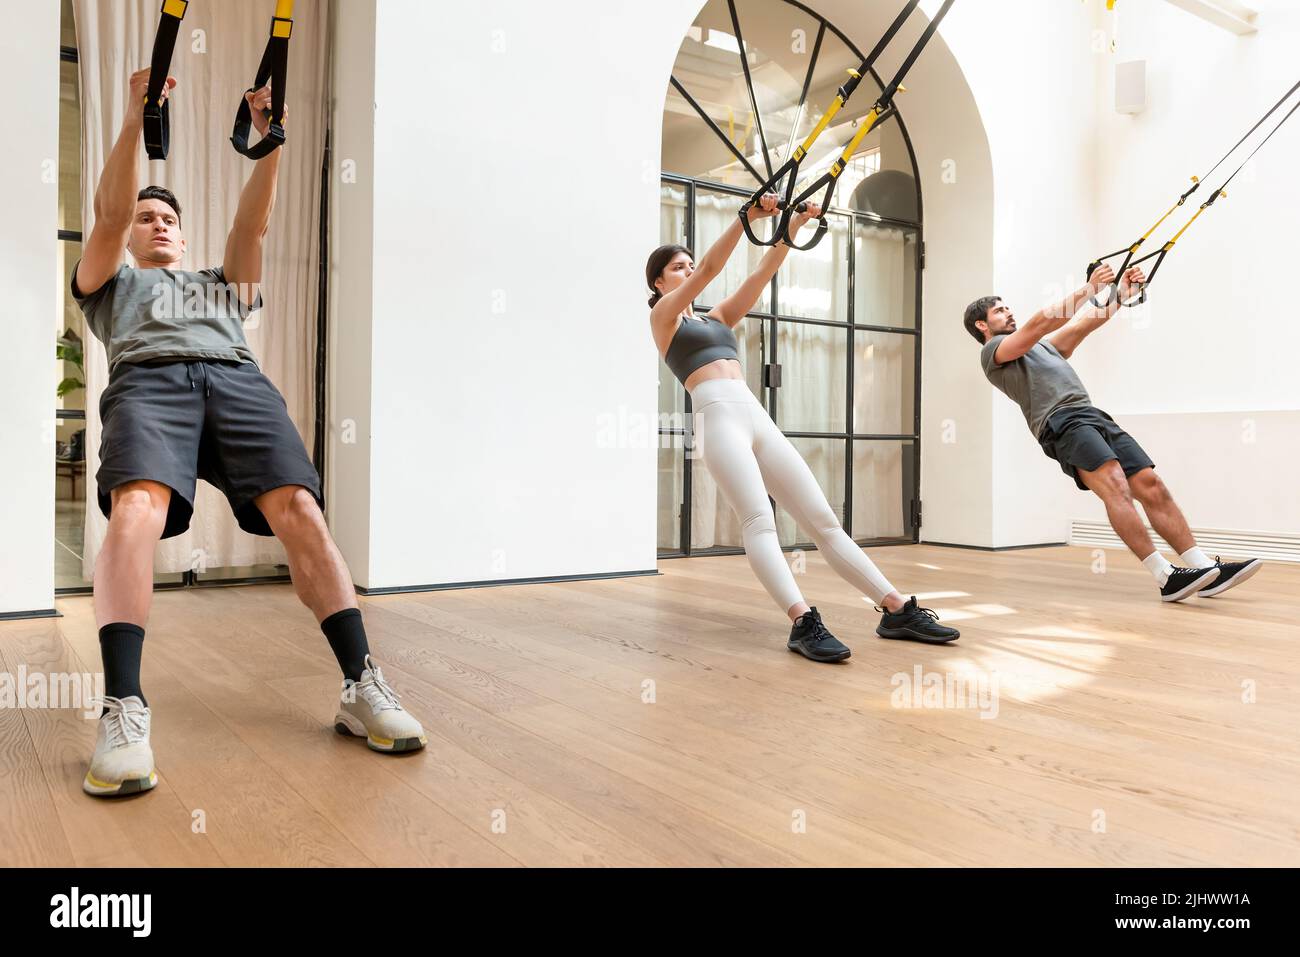 Vollkörper starker Menschen in der aktiven Trainingsbekleidung, die während des Funktionstrainings in einem modernen, leichten Fitnessstudio Stretching-Übungen mit TRX-Trägern machen Stockfoto